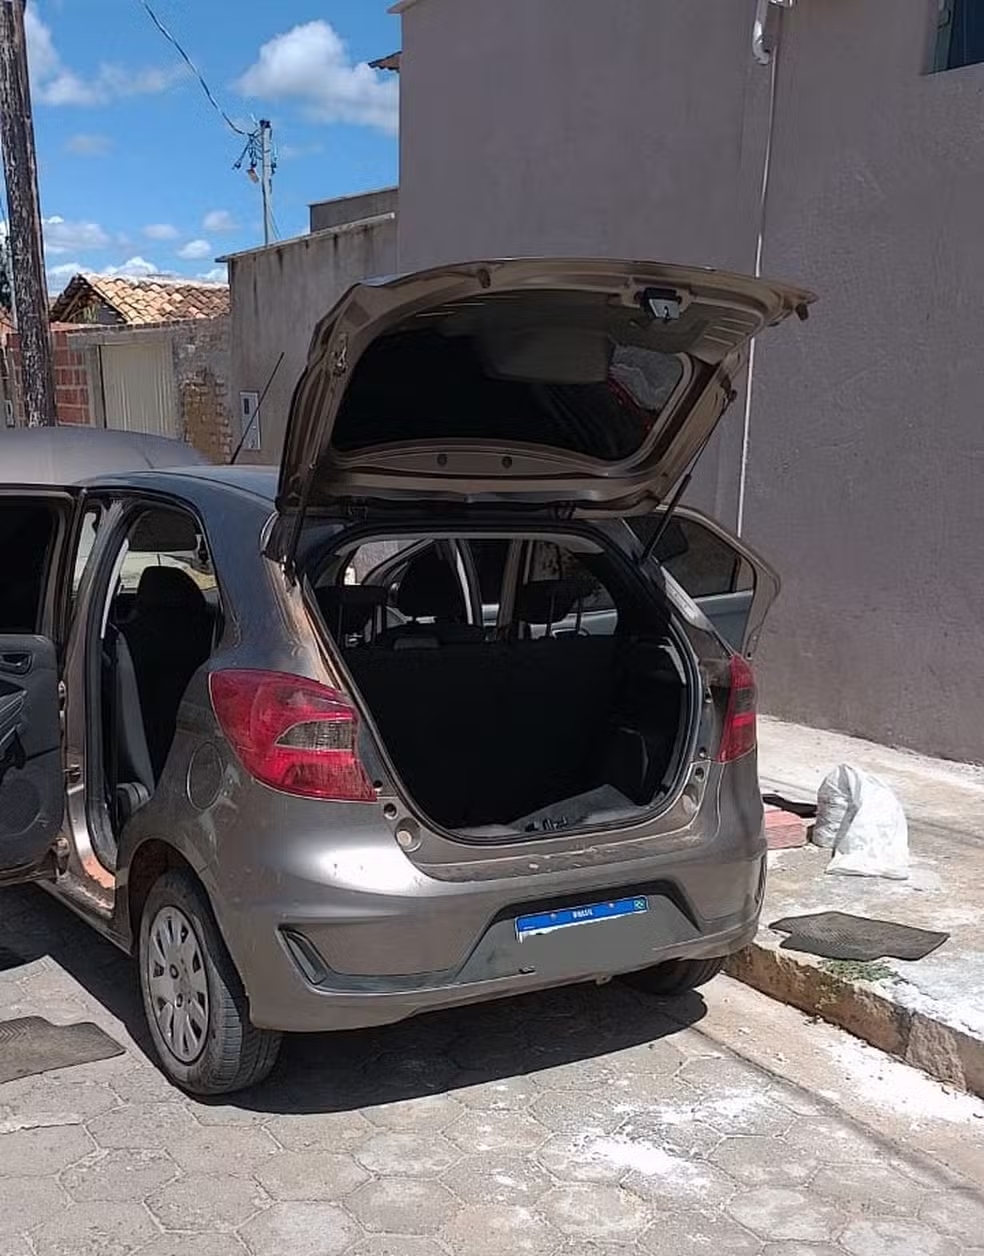 Egresso do sistema prisional é preso com carro clonado em Taiobeiras